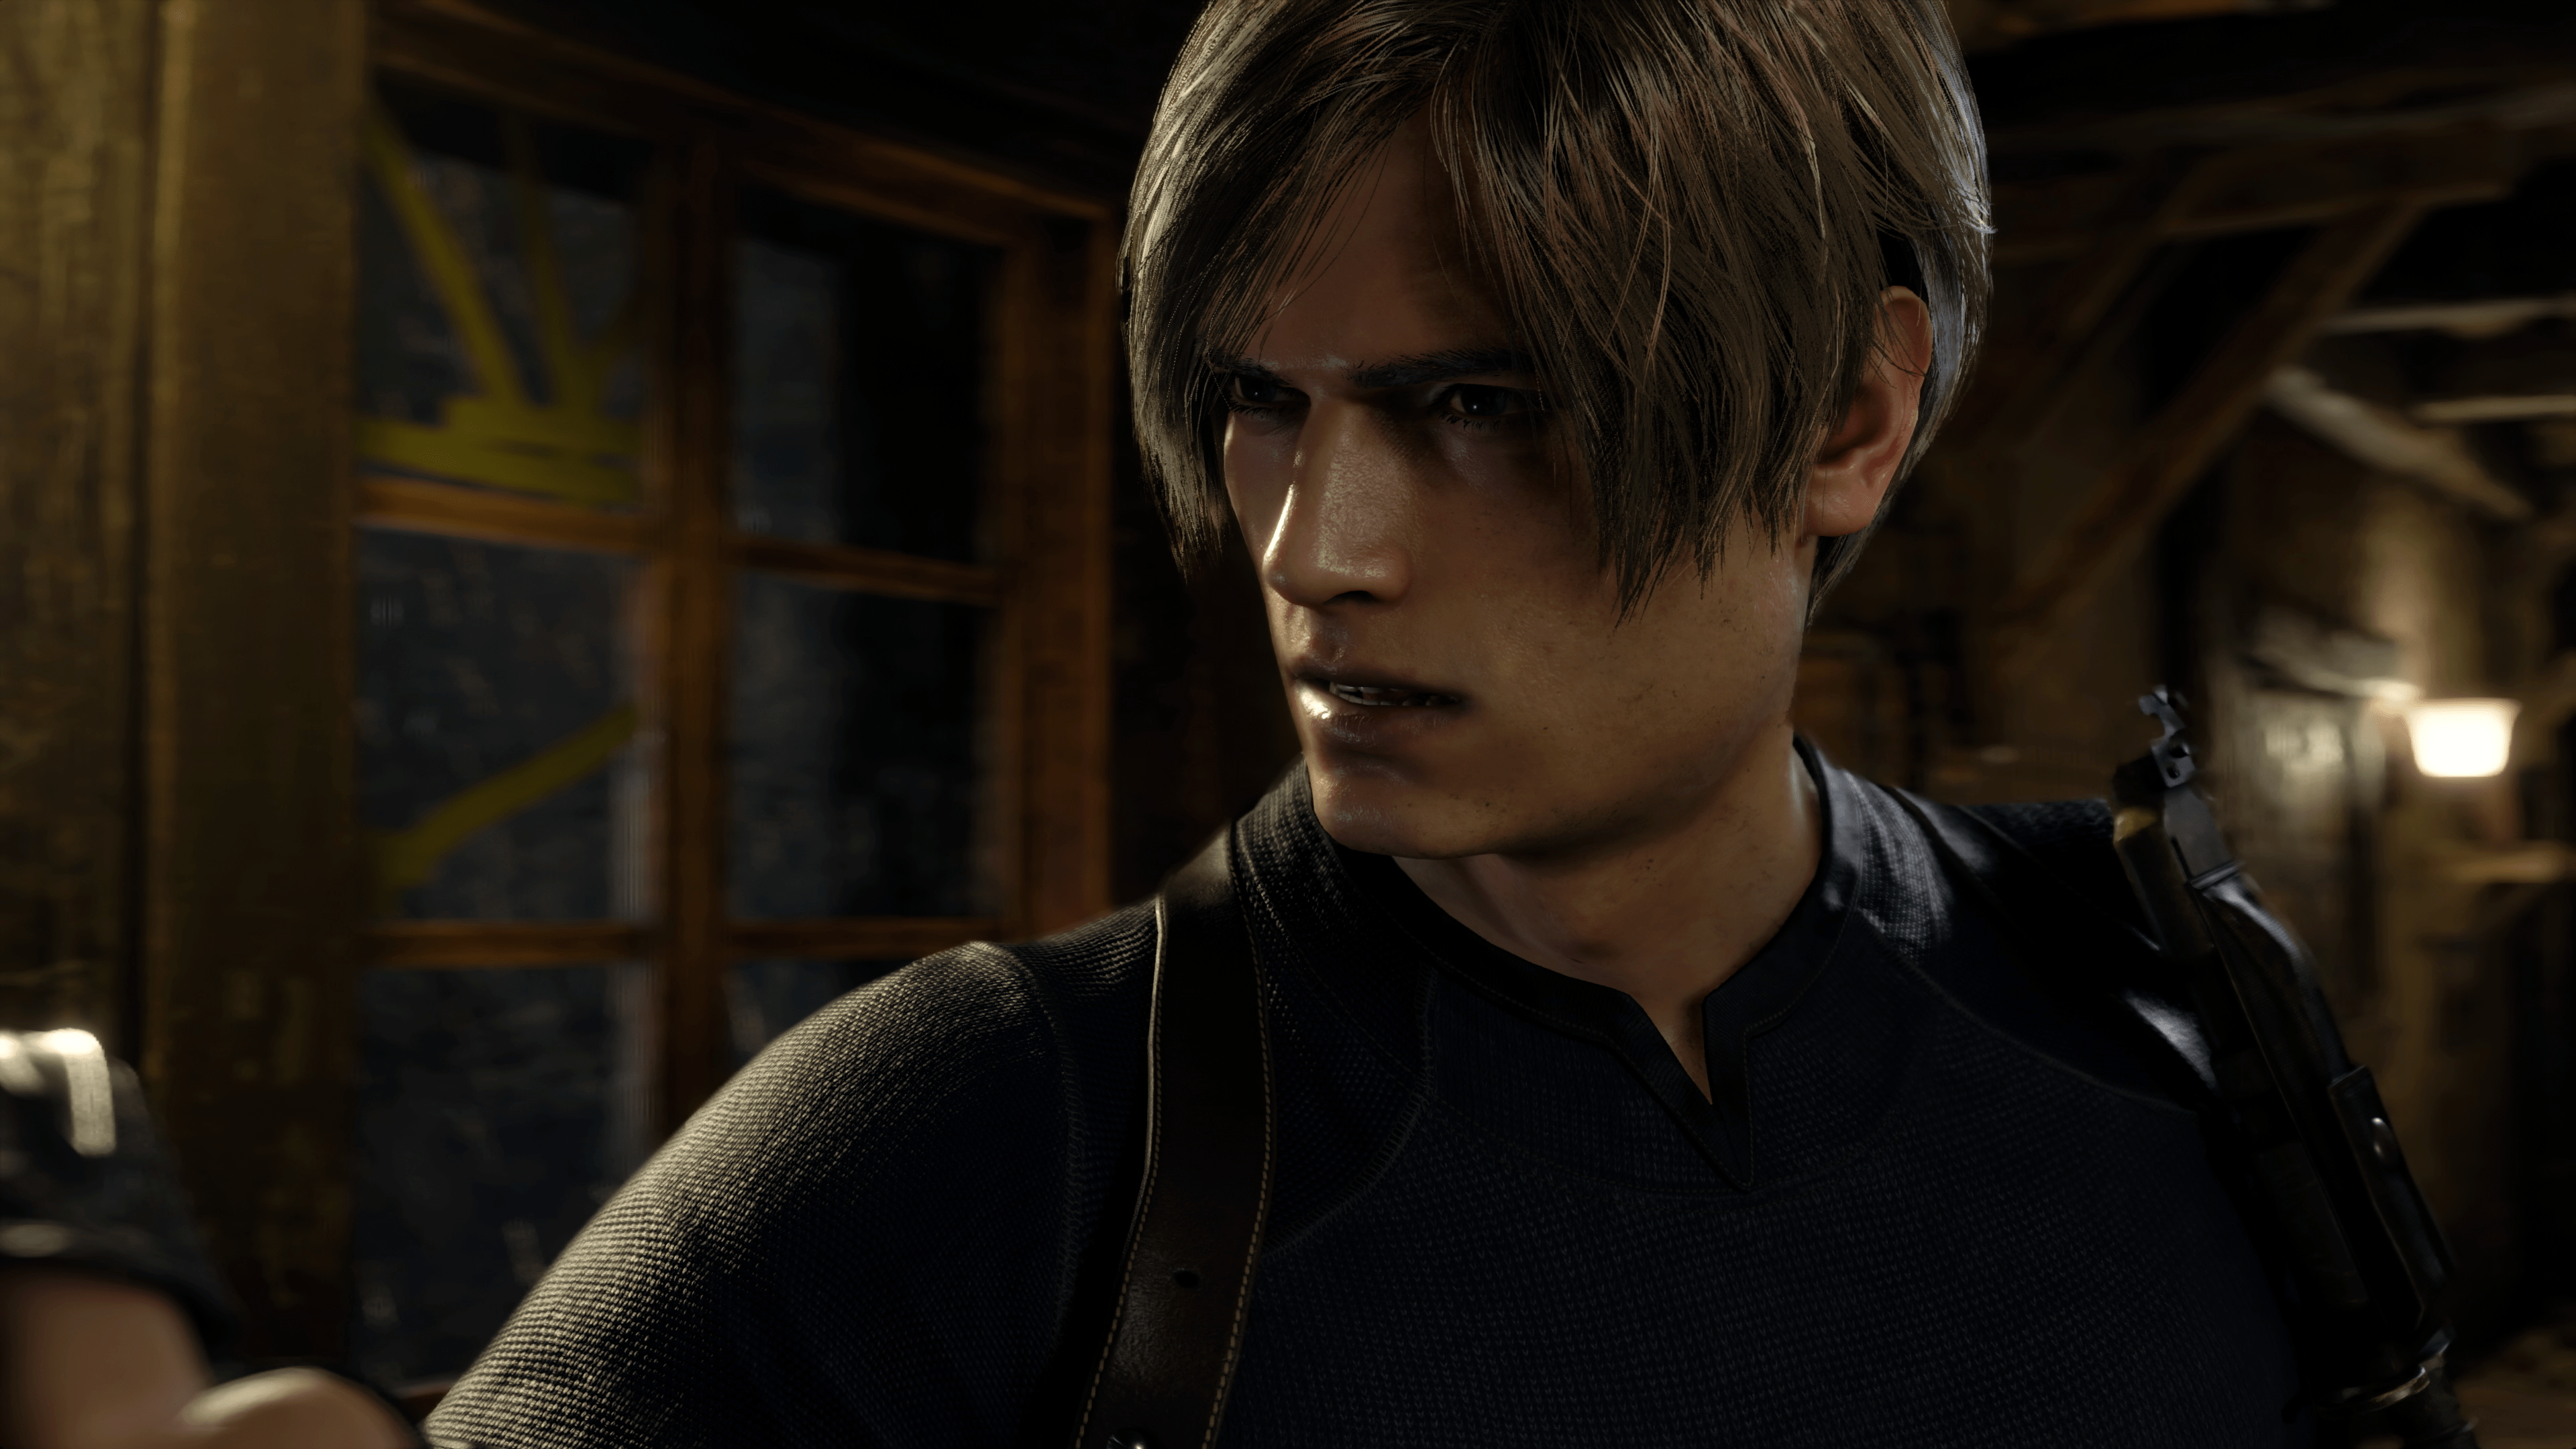 Resident Evil 4 Remake sales arabgamerz عرب جيمرز ريزدنت ايفل 4 ريميك مبيعات